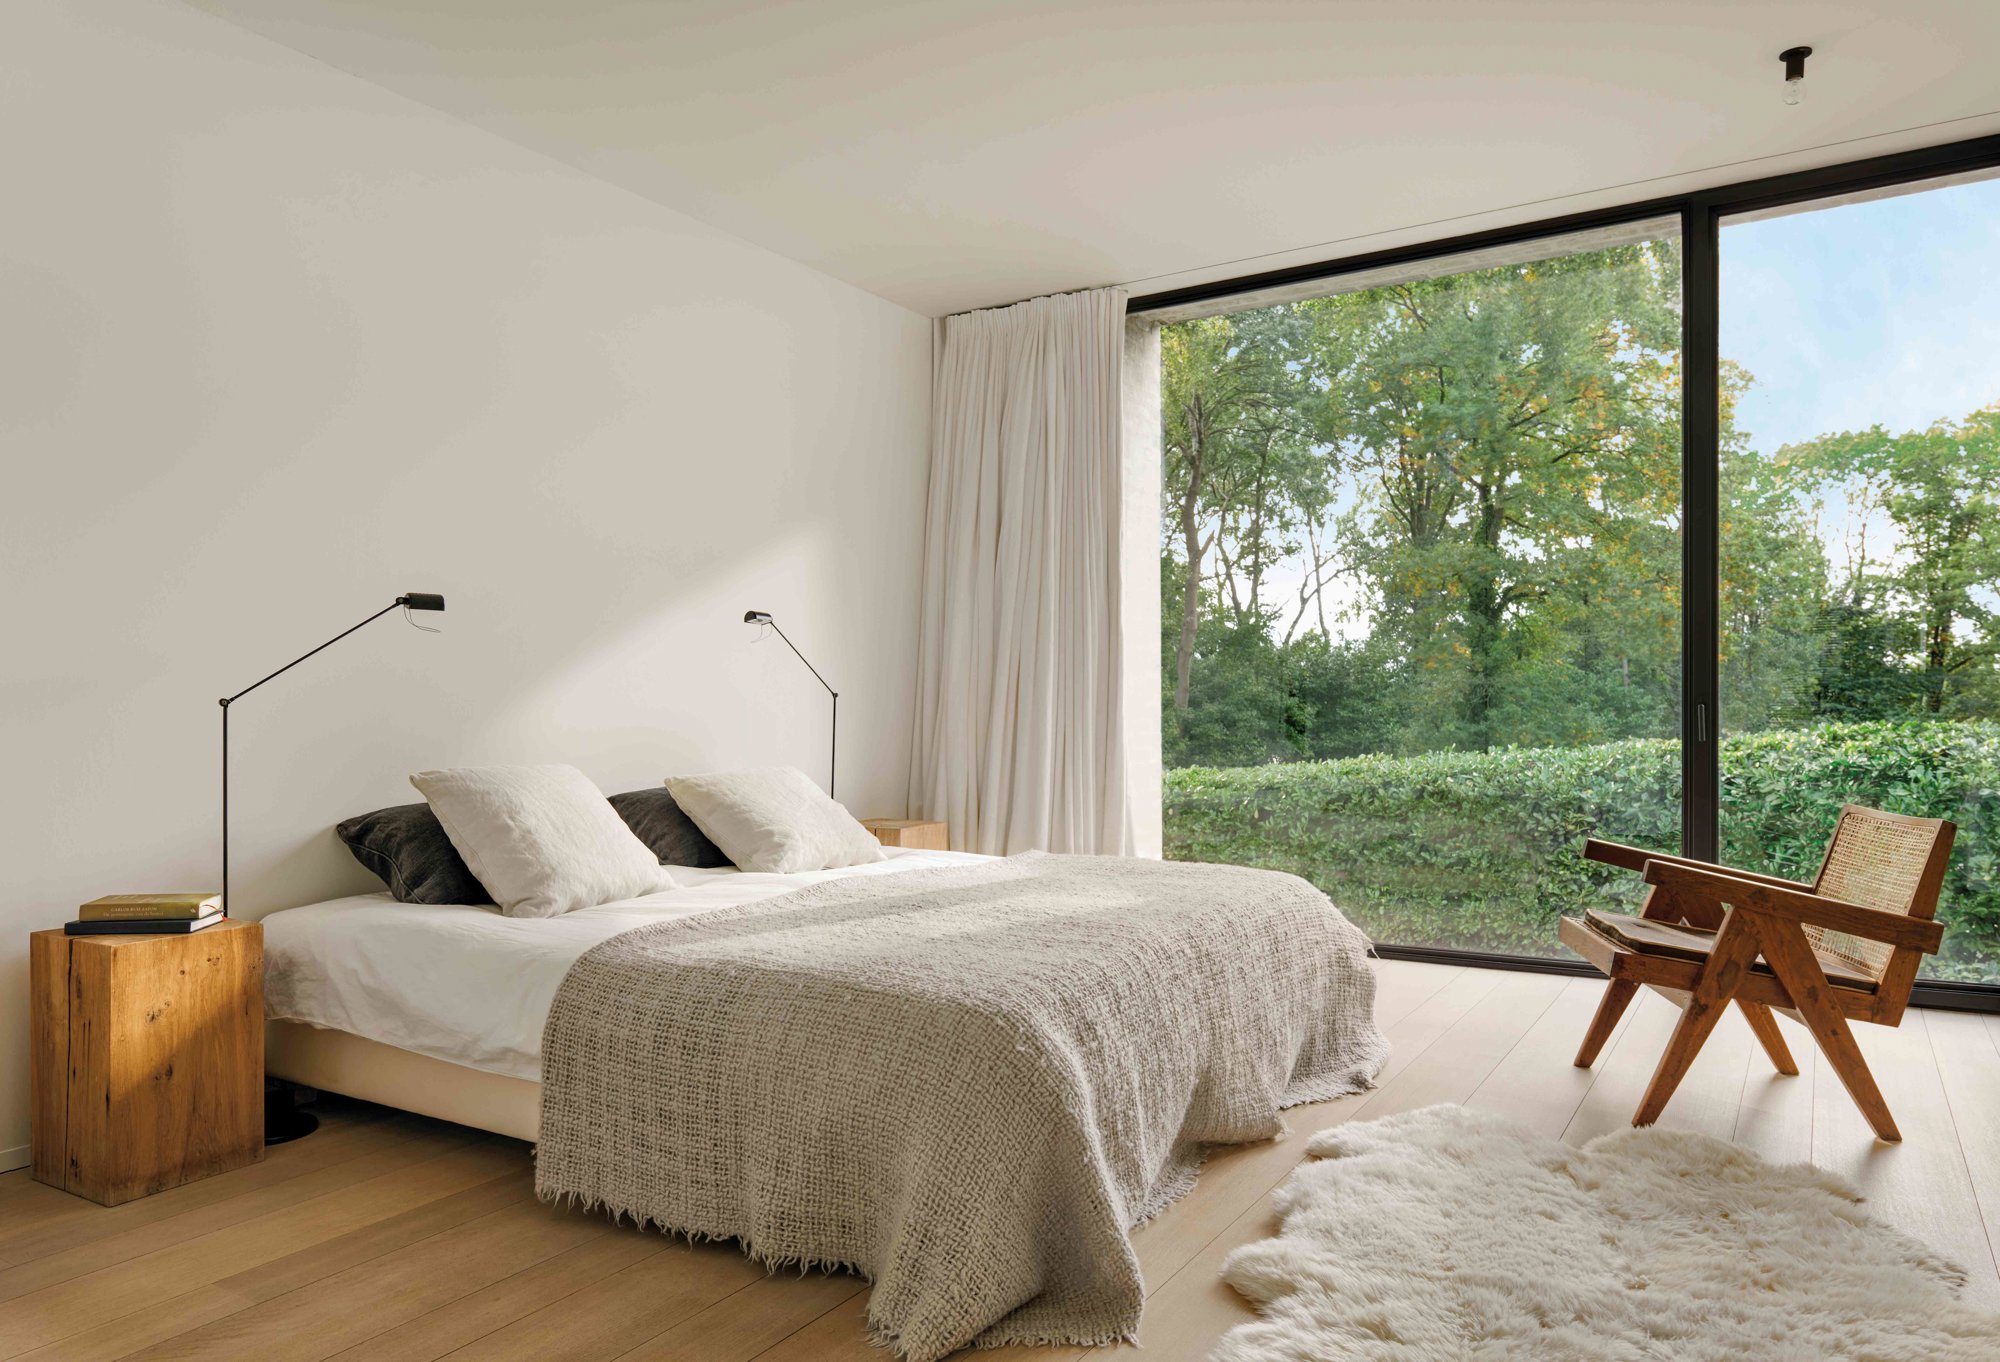 Dormitorios minimalista en blanco con ventanal